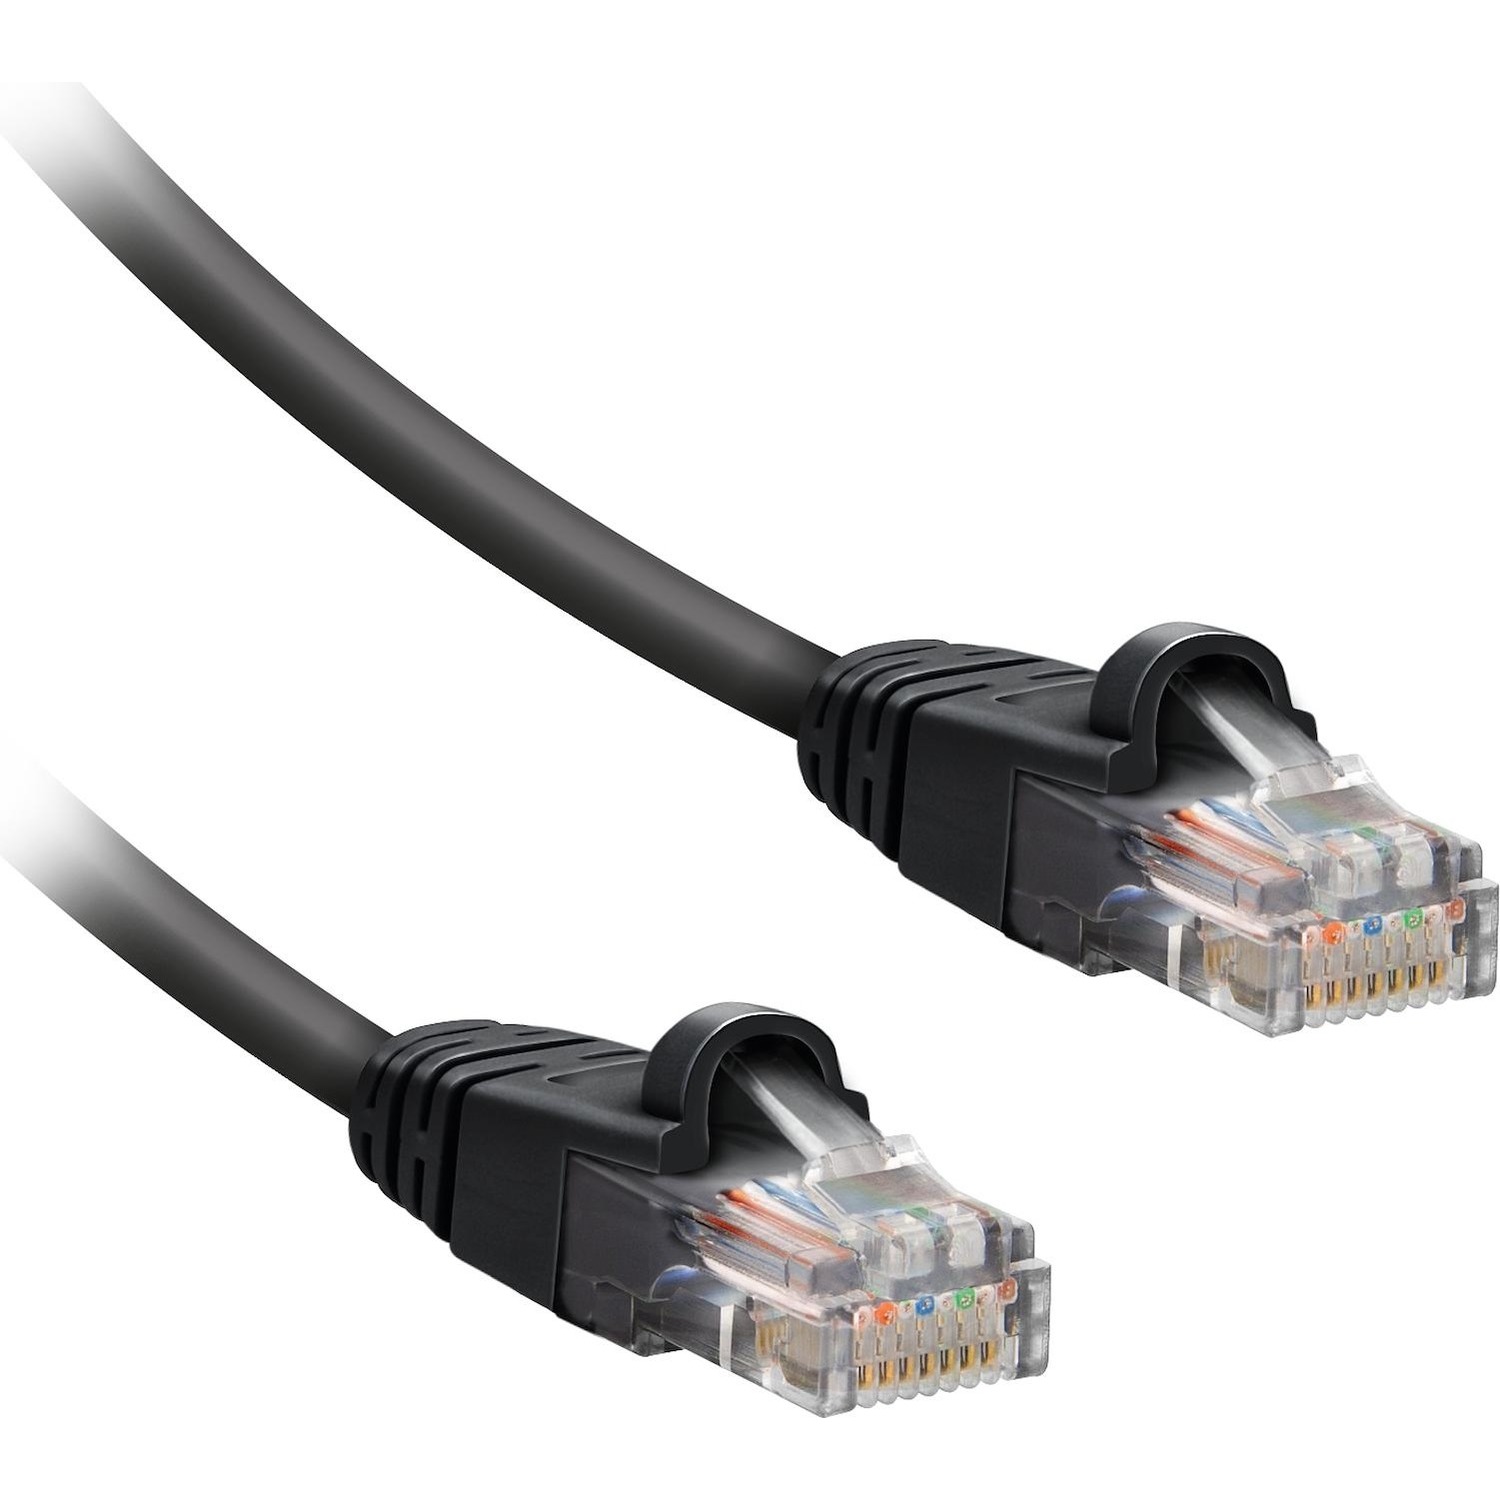 Immagine per Cavo di rete Ekon per PC S/FTP cat 8 connettore RJ45 da 3 metri nero da DIMOStore